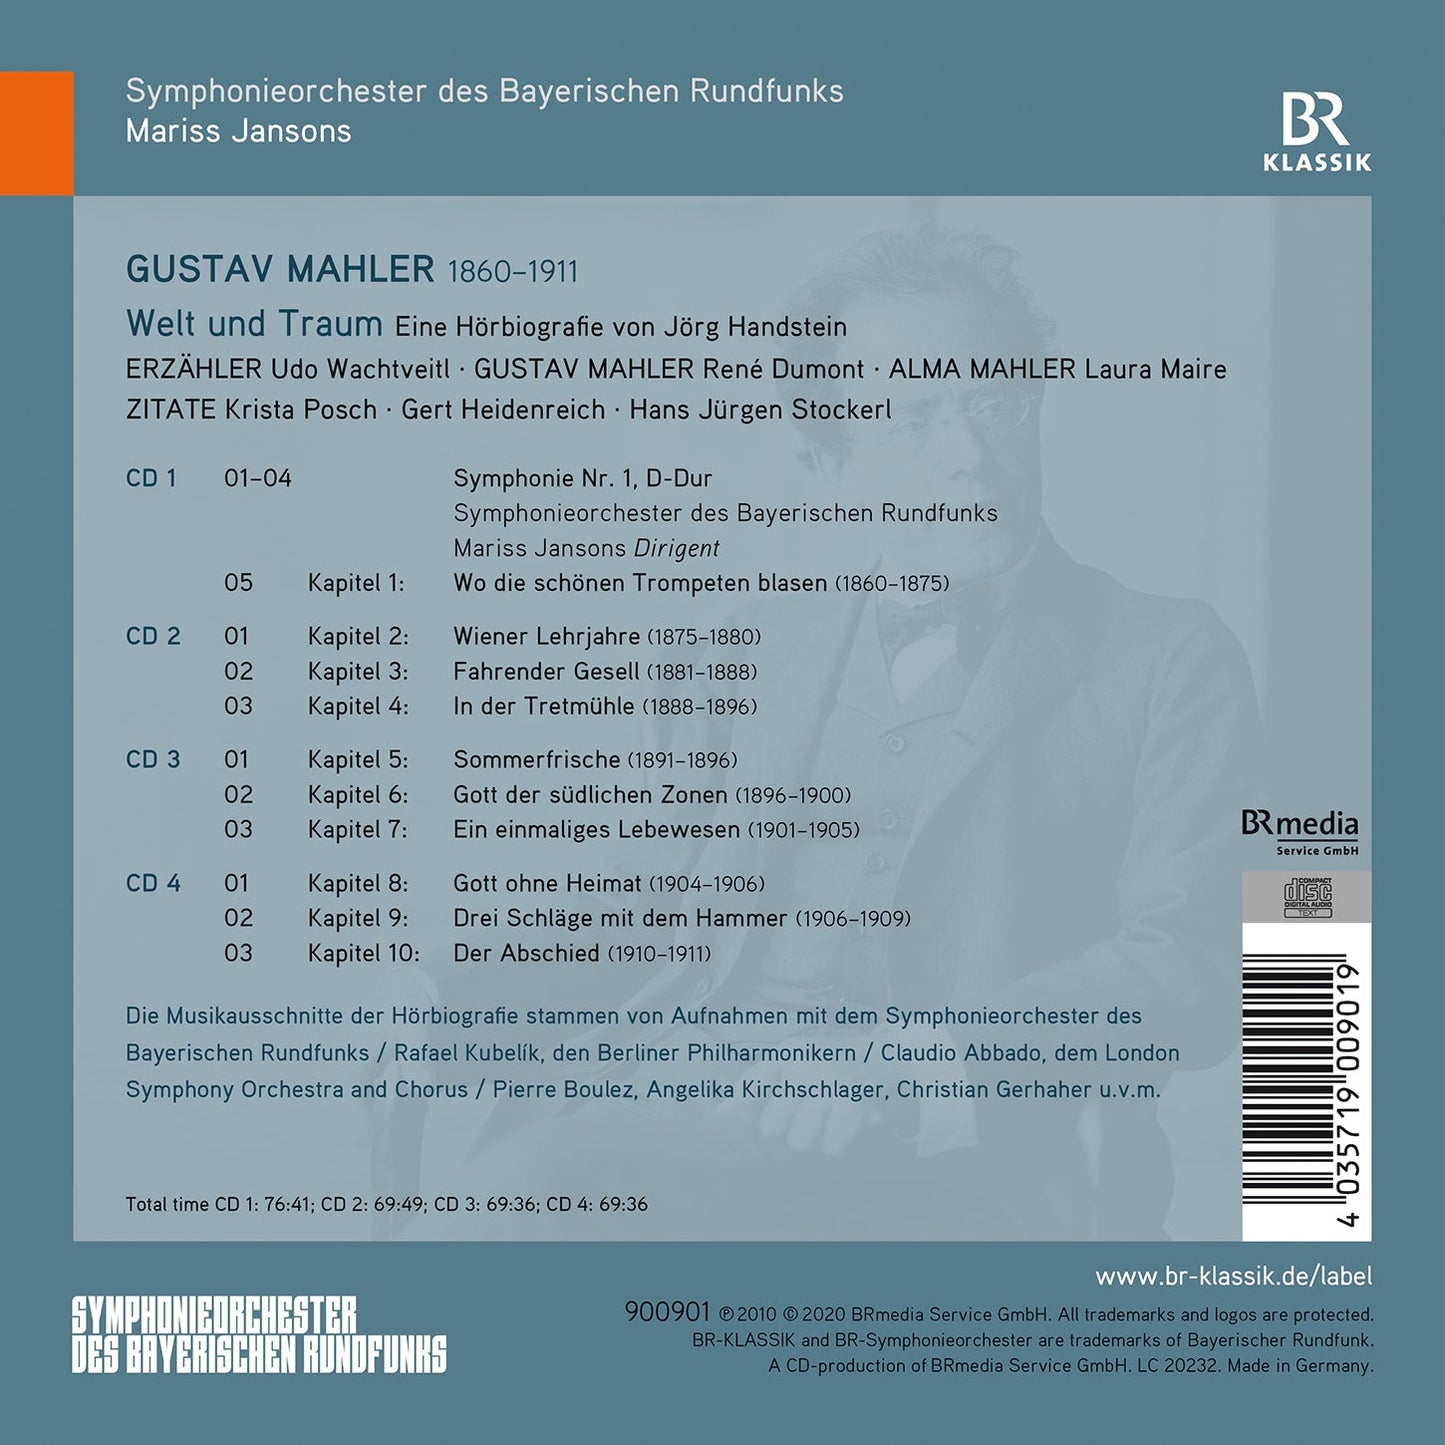 Mahler: Welt Und Traum (World & Dream) - Audio Biography By